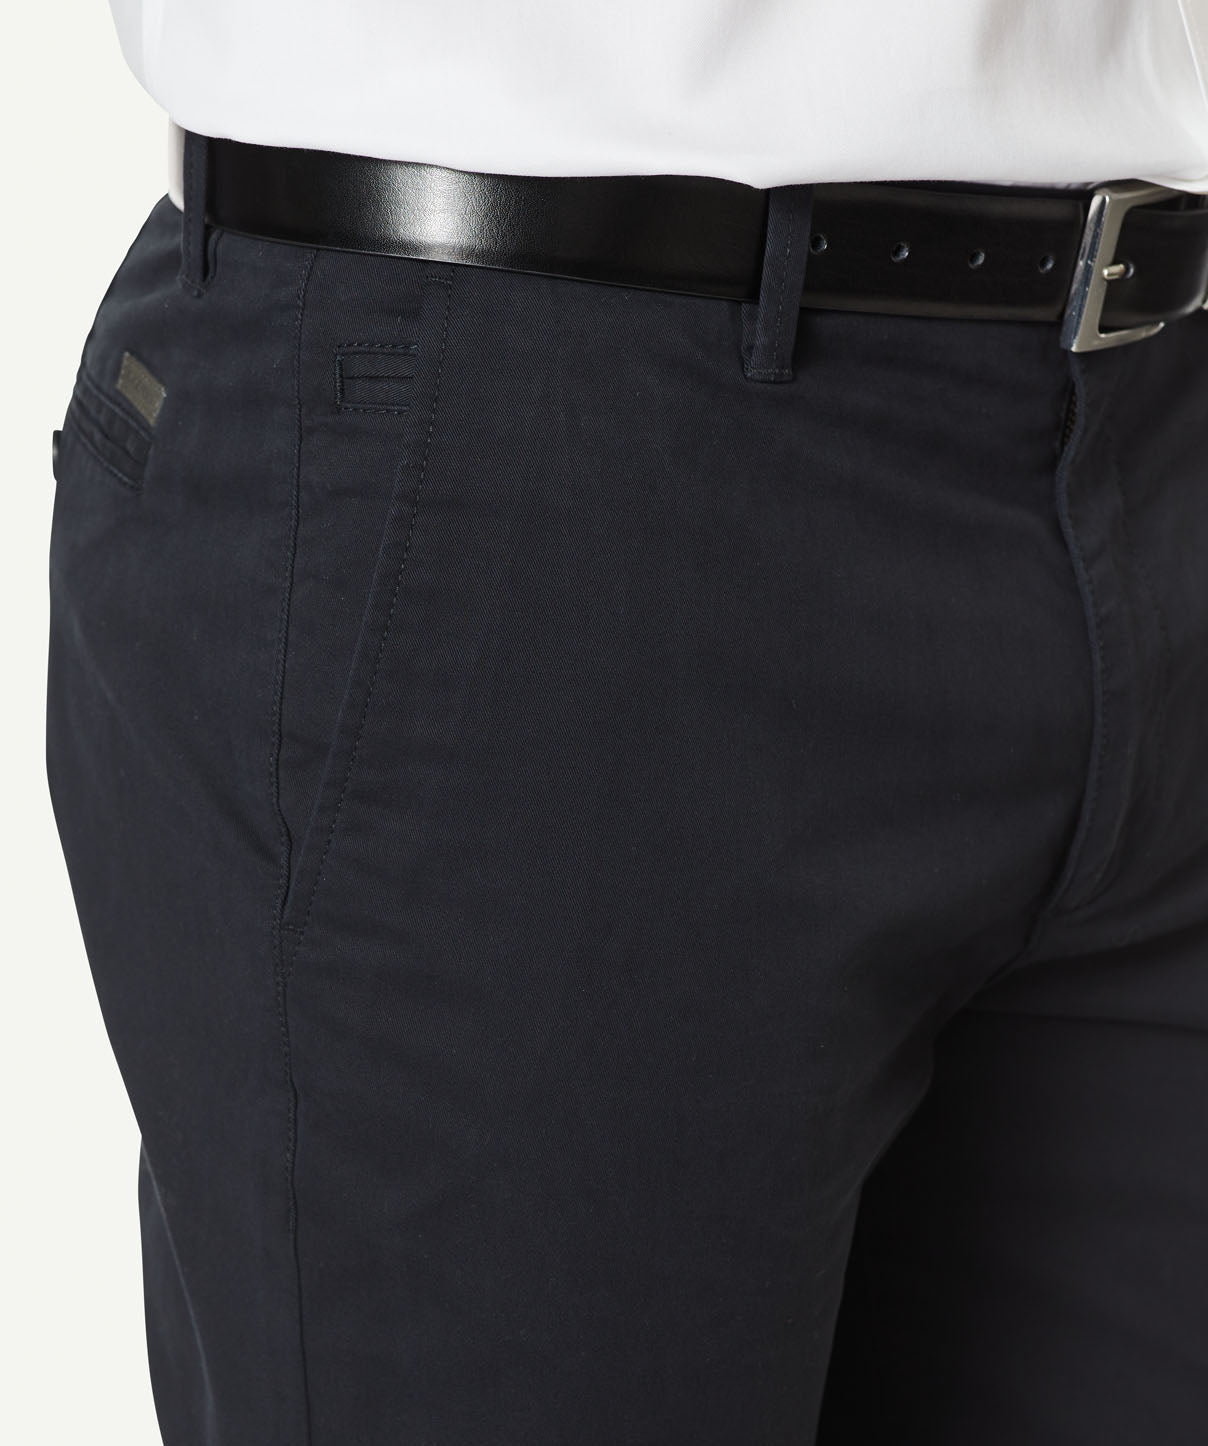 Modern Chino Pants - Black - Casual Pants - GAZMAN